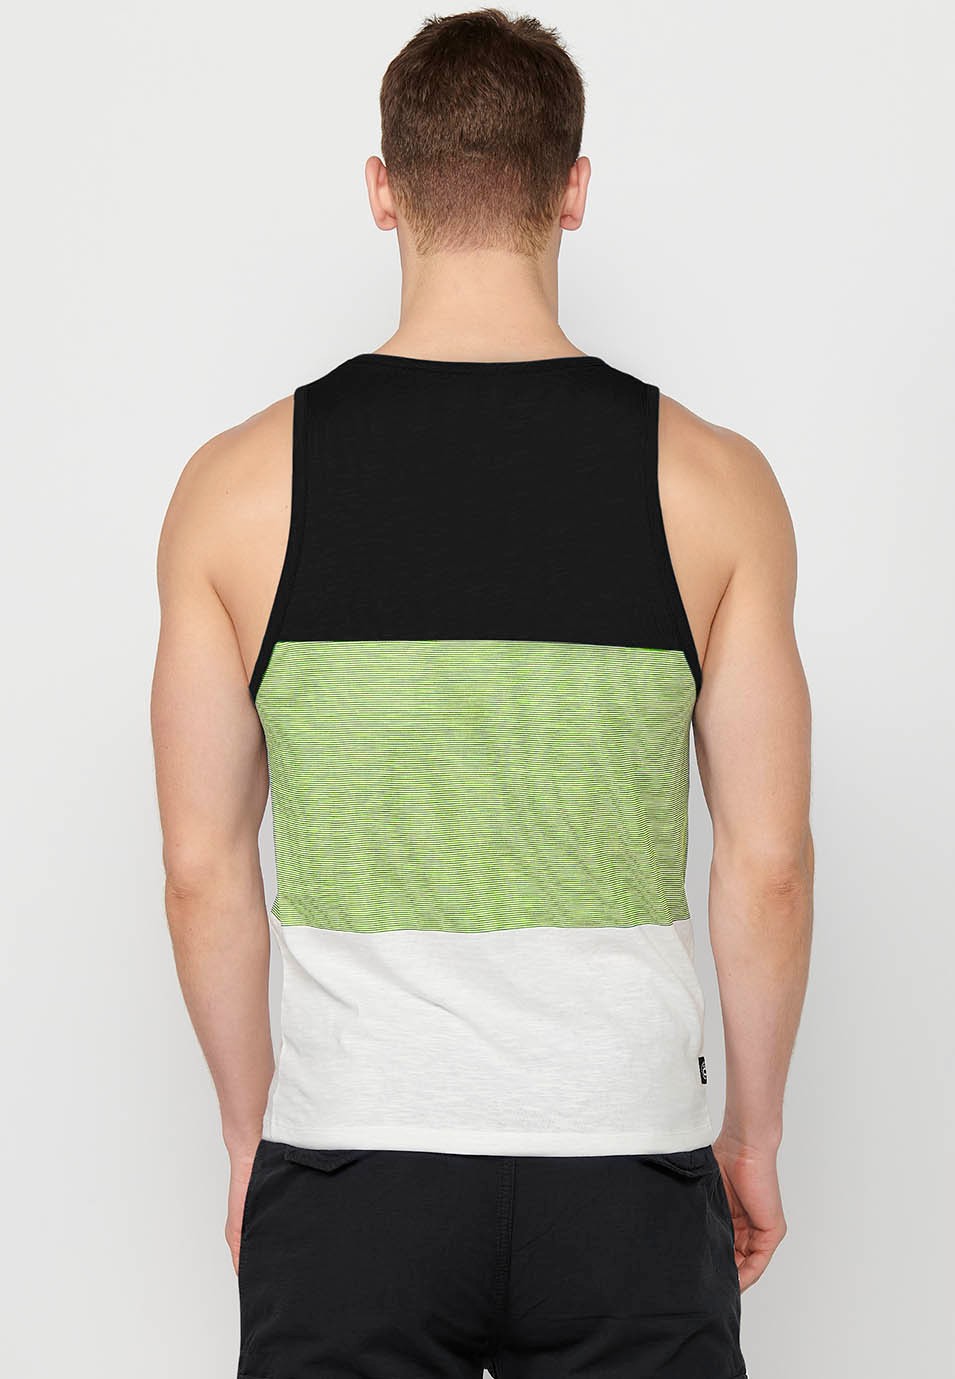 Tank top, multicolored black striped print, for men